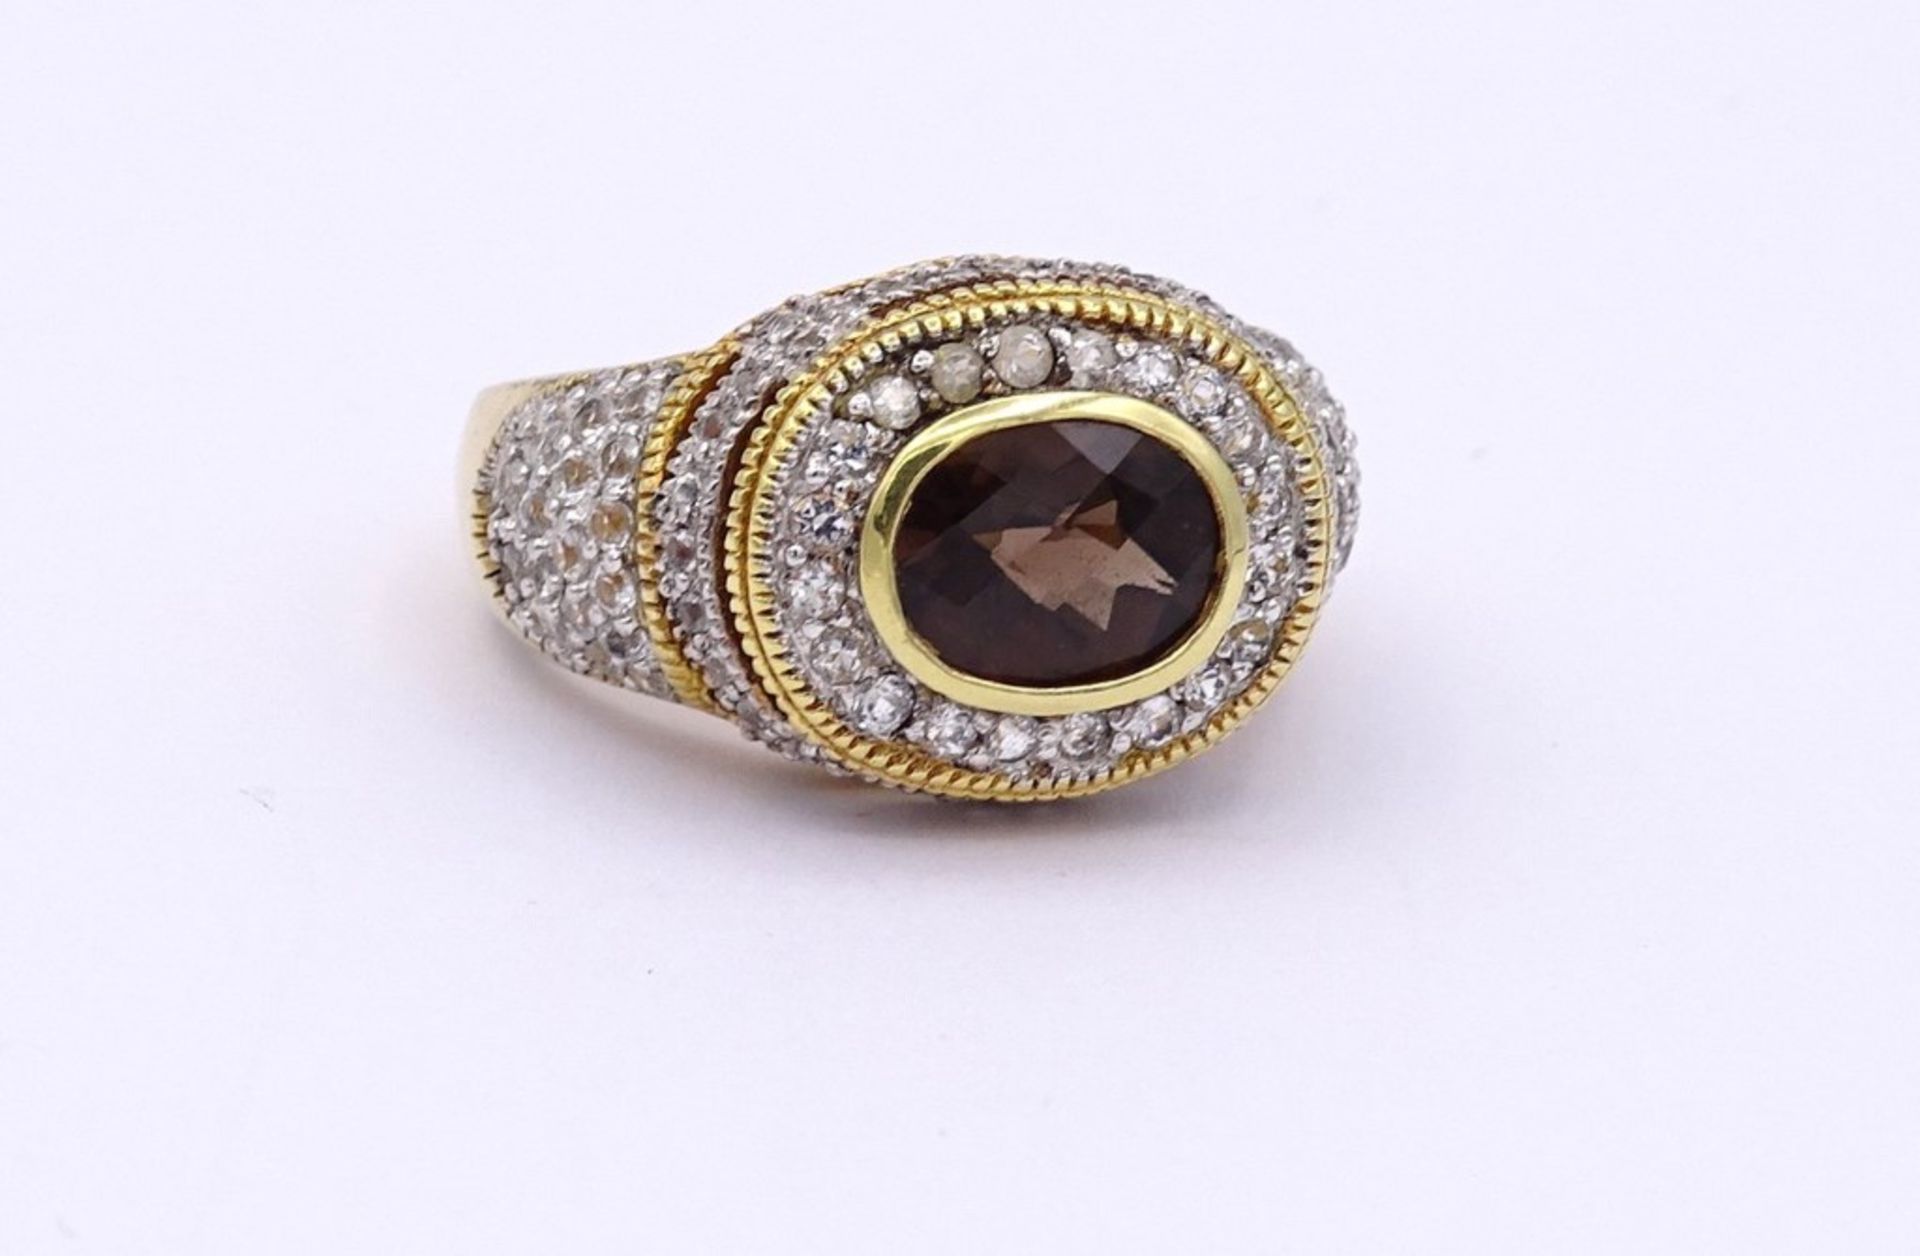 Prachtvoller Silber Ring mit facc.Rauchquarz und rund facc.klaren Steinen,Silber-vergoldet, 925/000, - Bild 2 aus 3